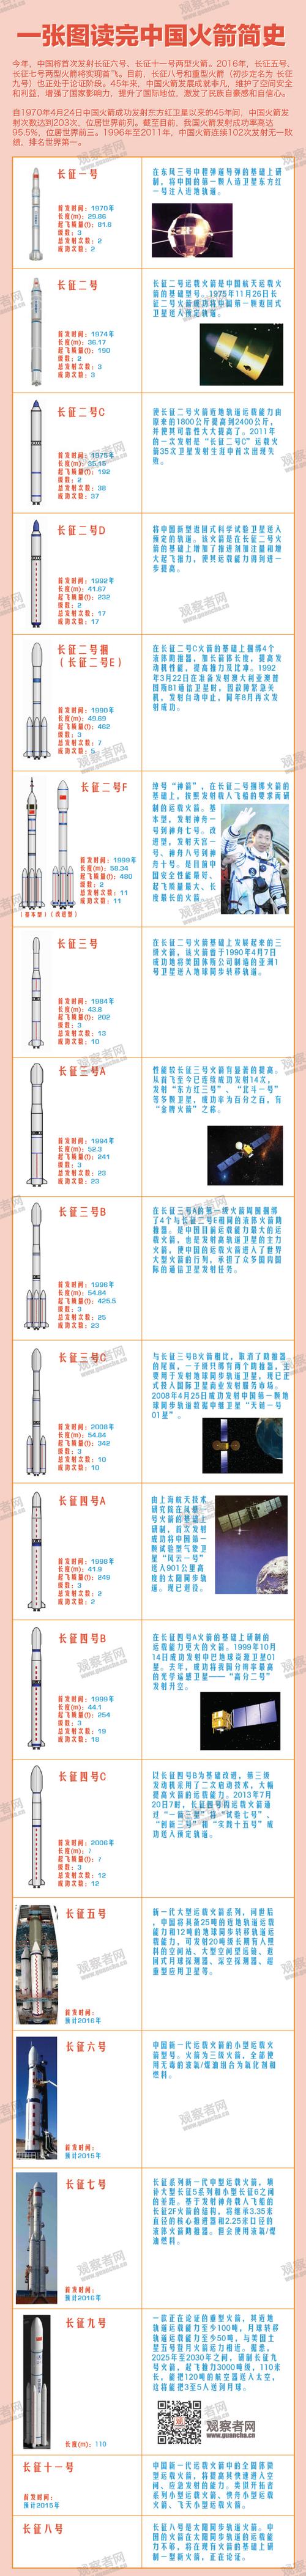 火箭发展史